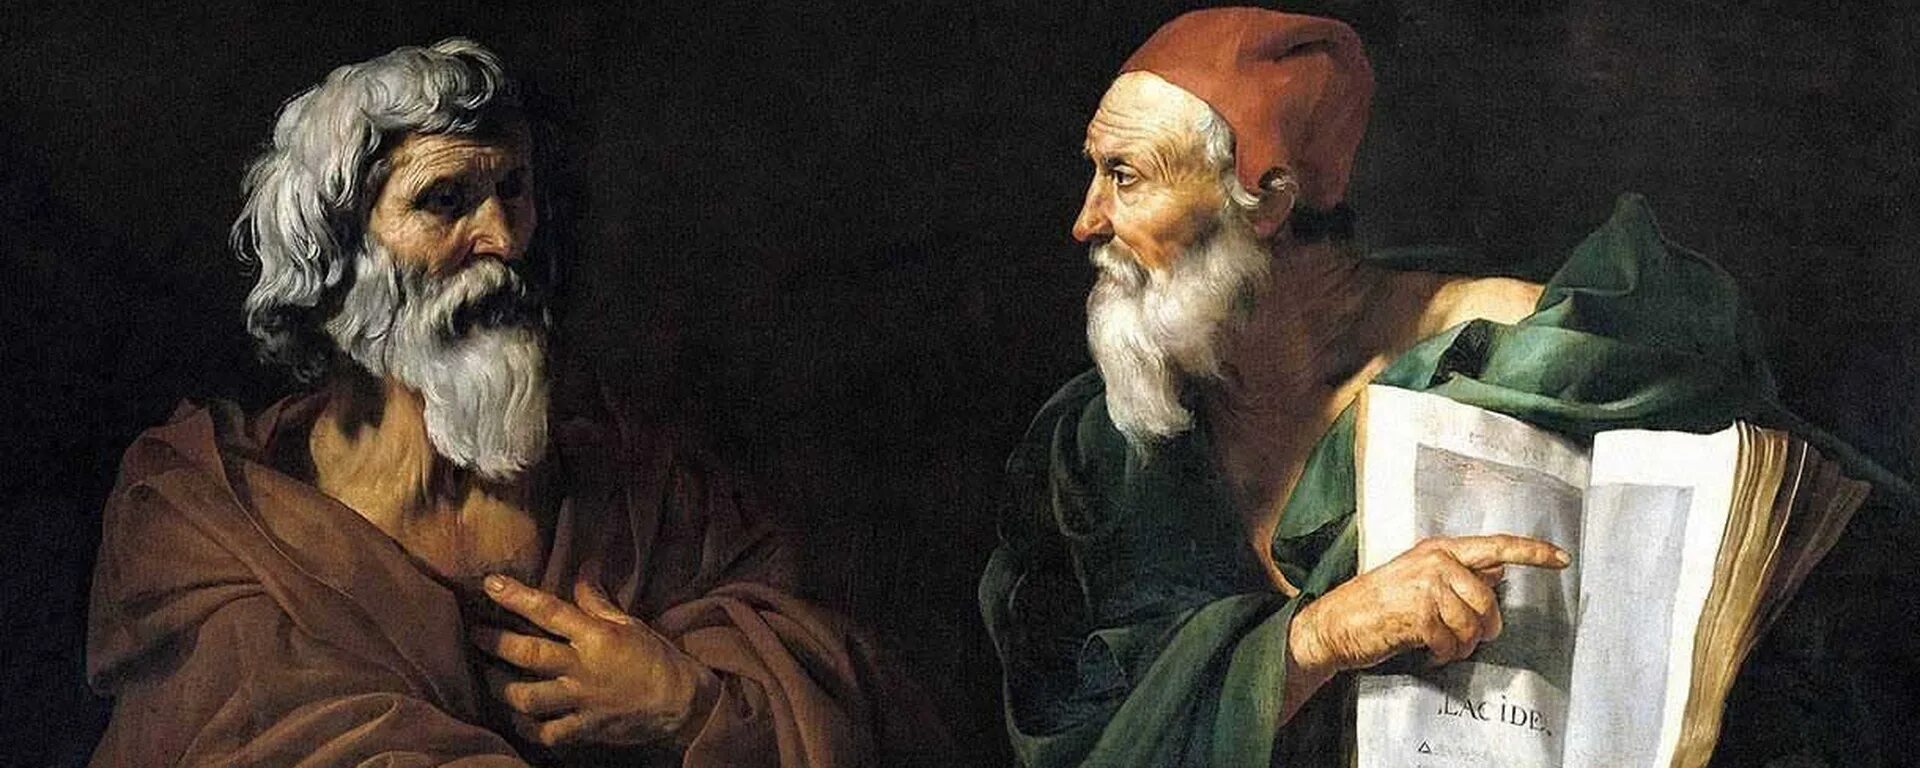 Два философа. Философы в живописи. Спор двух философов.